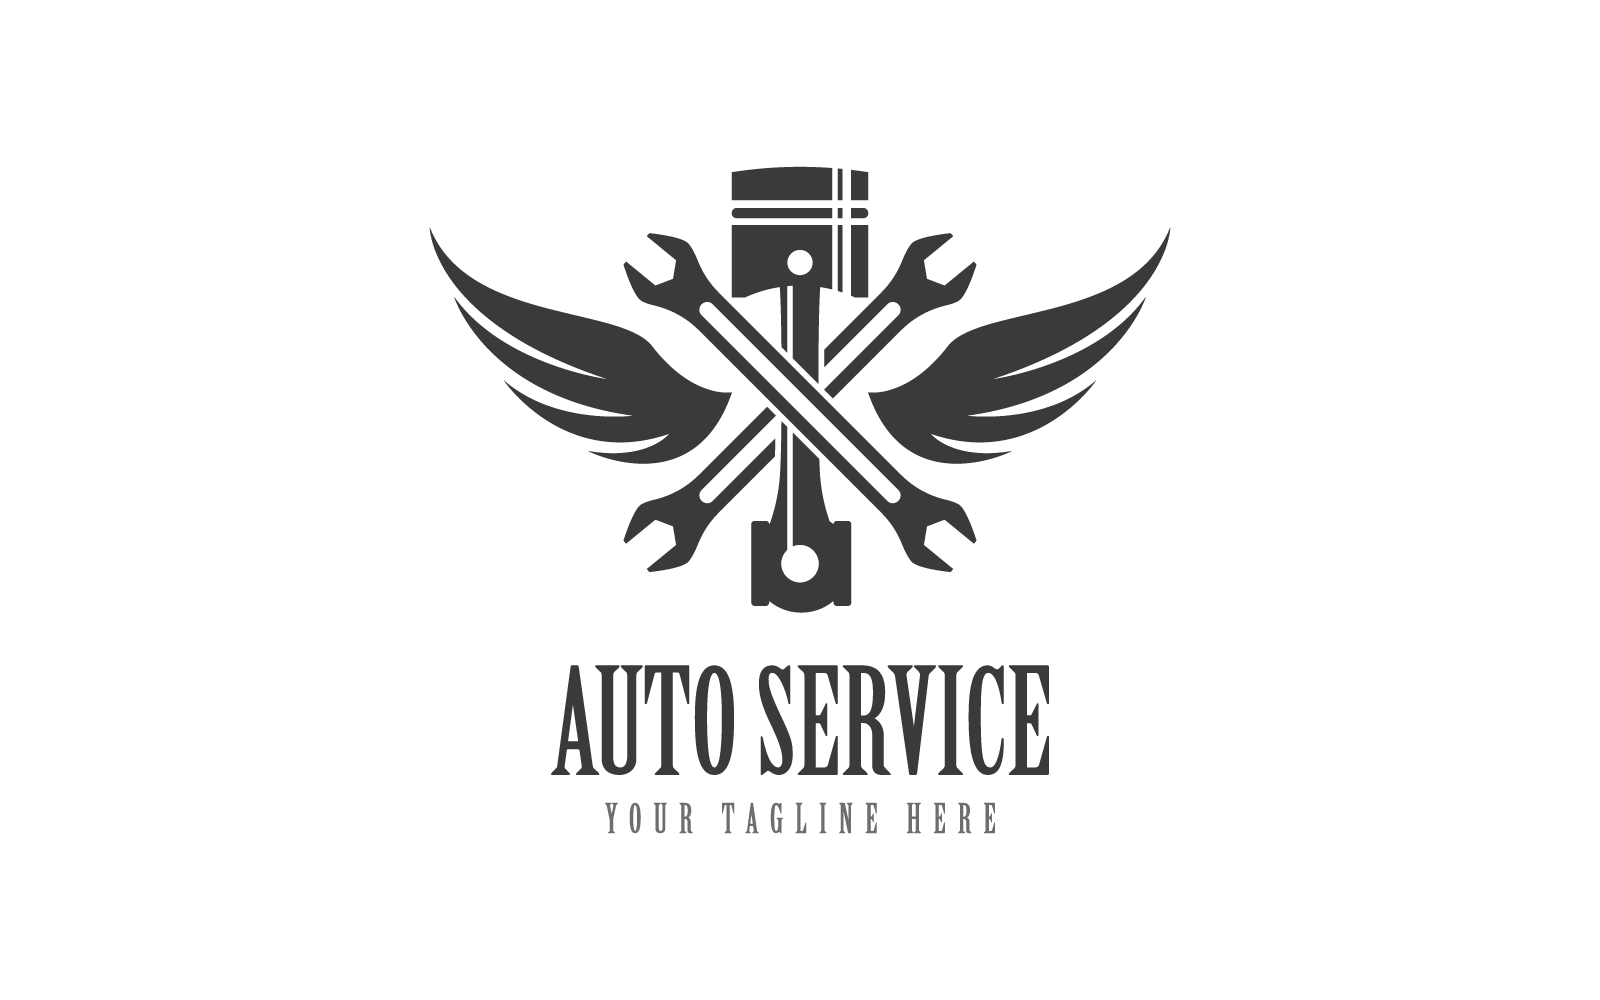 Piston auto service logo vector design